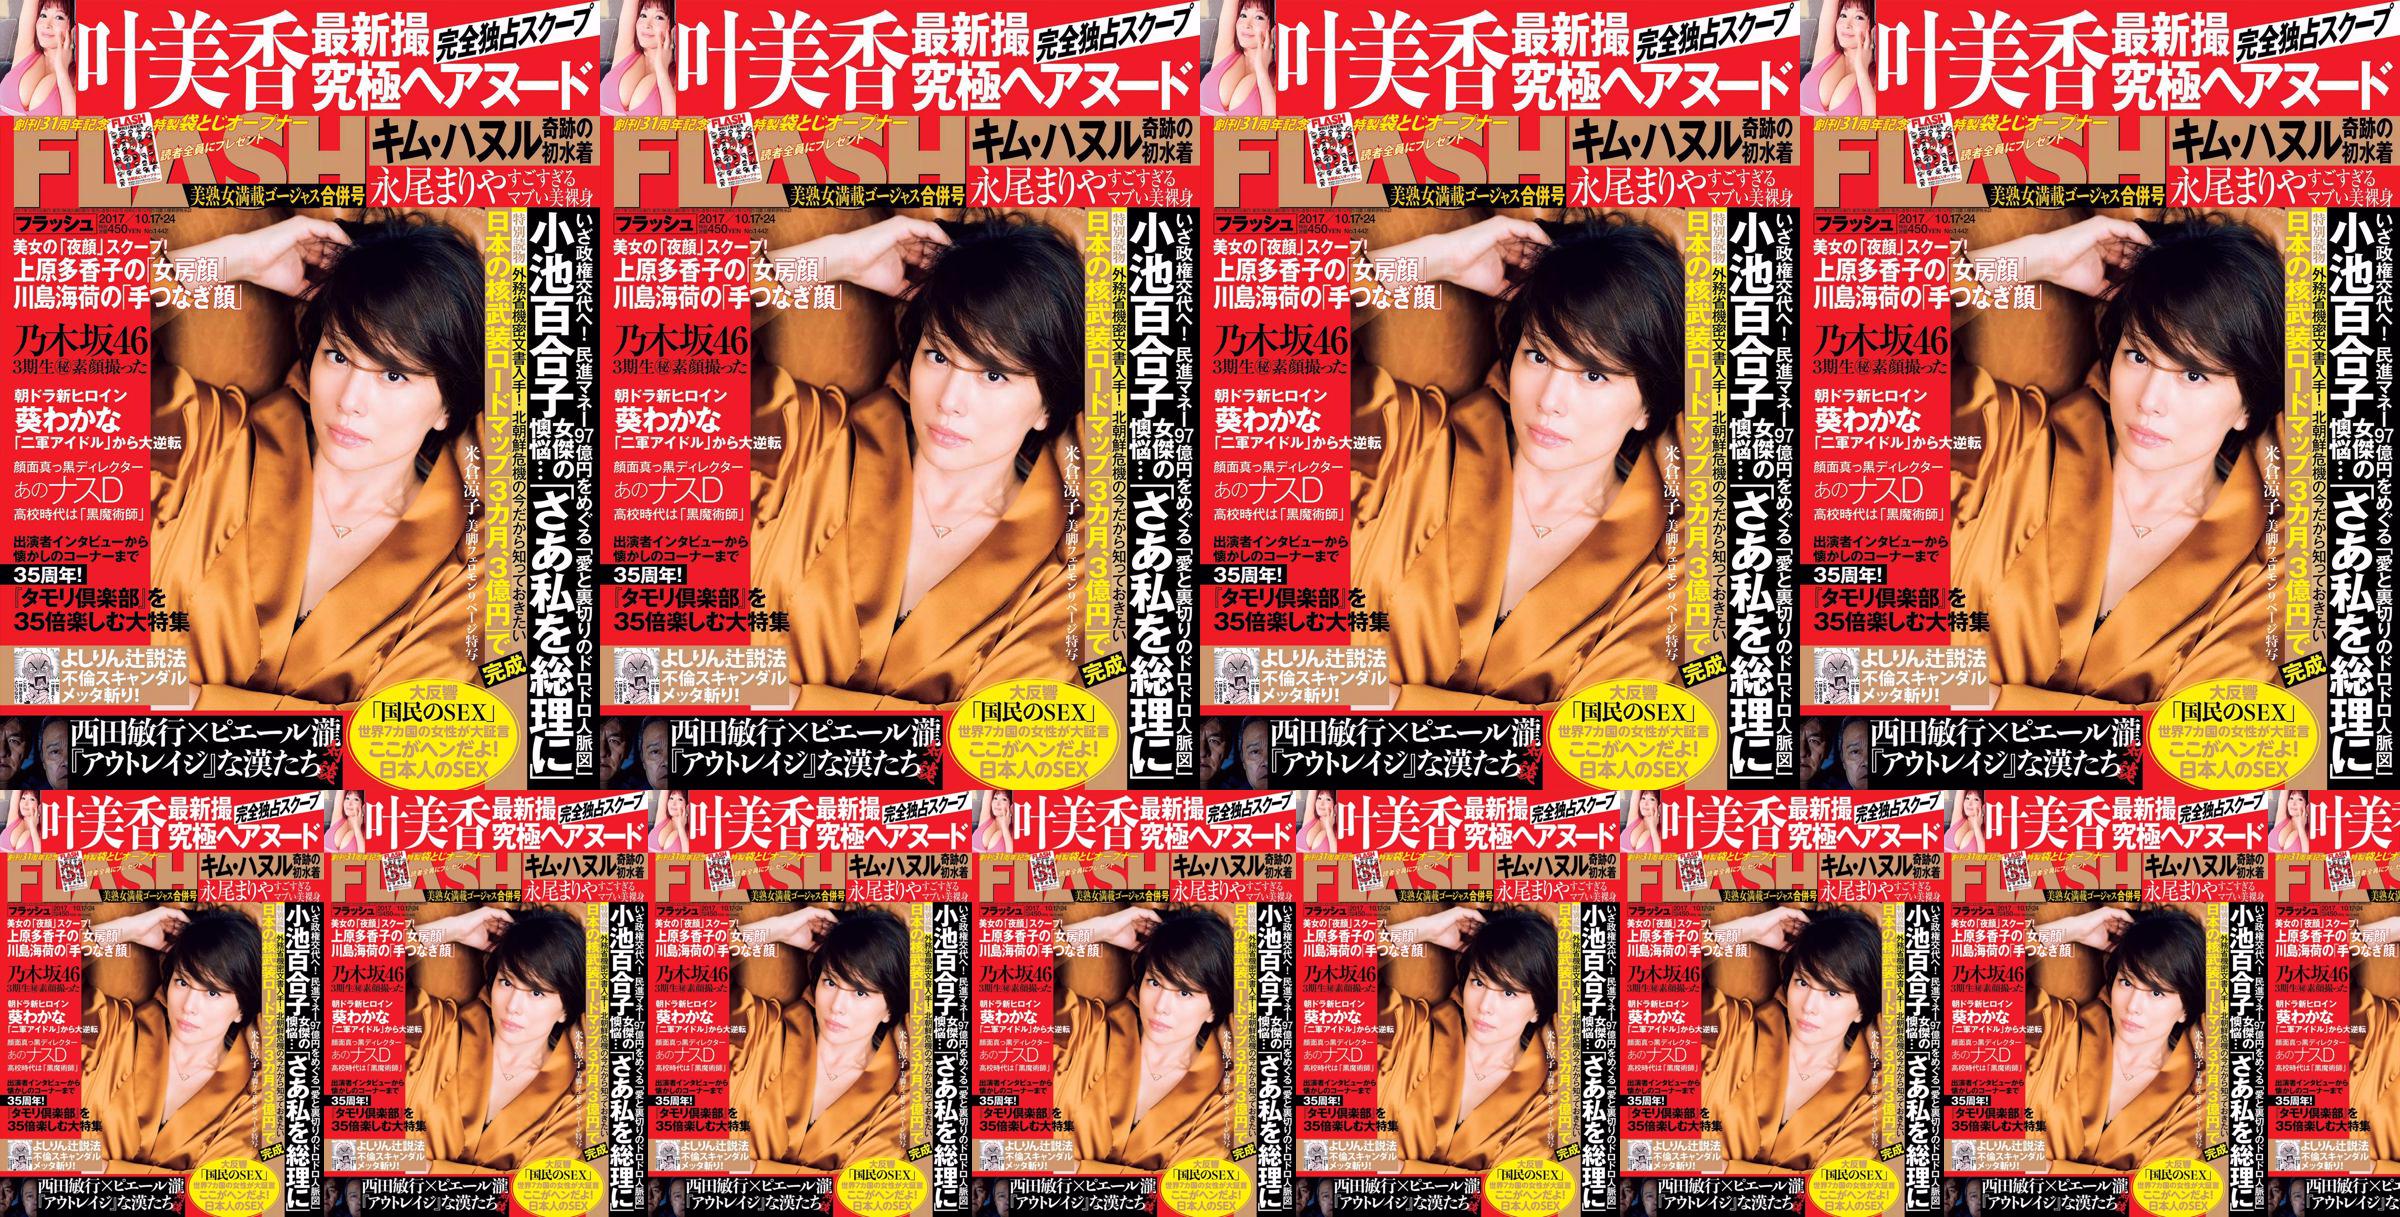 [FLASH] Yonekura Ryoko Ye Meixiang Tachibana Hoa Rin Nagao Rika 2017. 10.17-24 Tạp chí ảnh No.c9f51e Trang 1